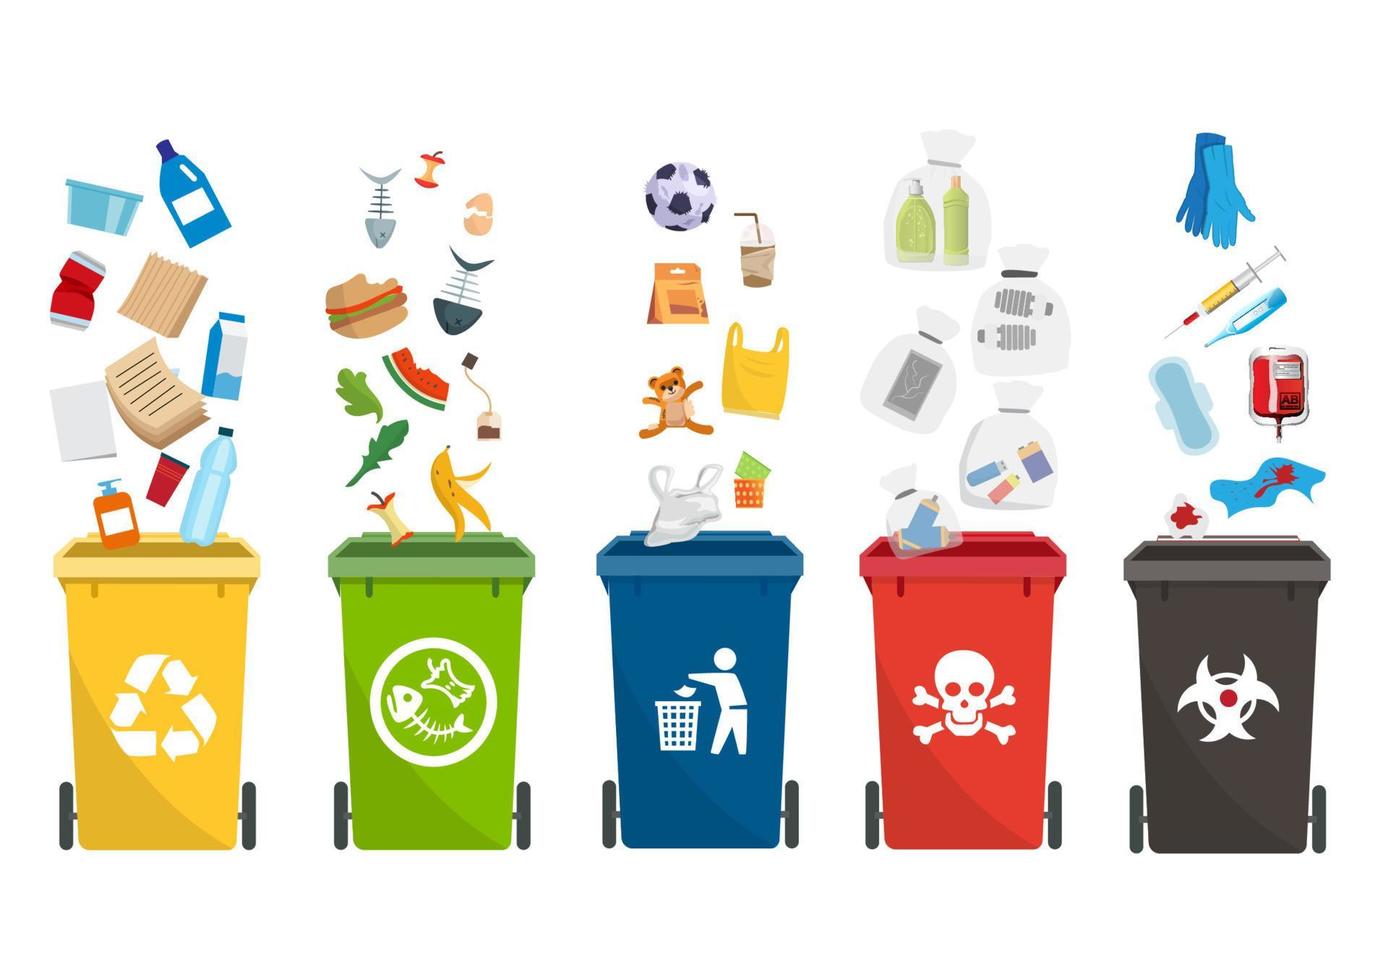 bidoni della spazzatura colorati su uno sfondo bianco simboli per contenitori e raccolta differenziata. tipi di rifiuti. illustrazione vettoriale di cartone animato in stile piatto.